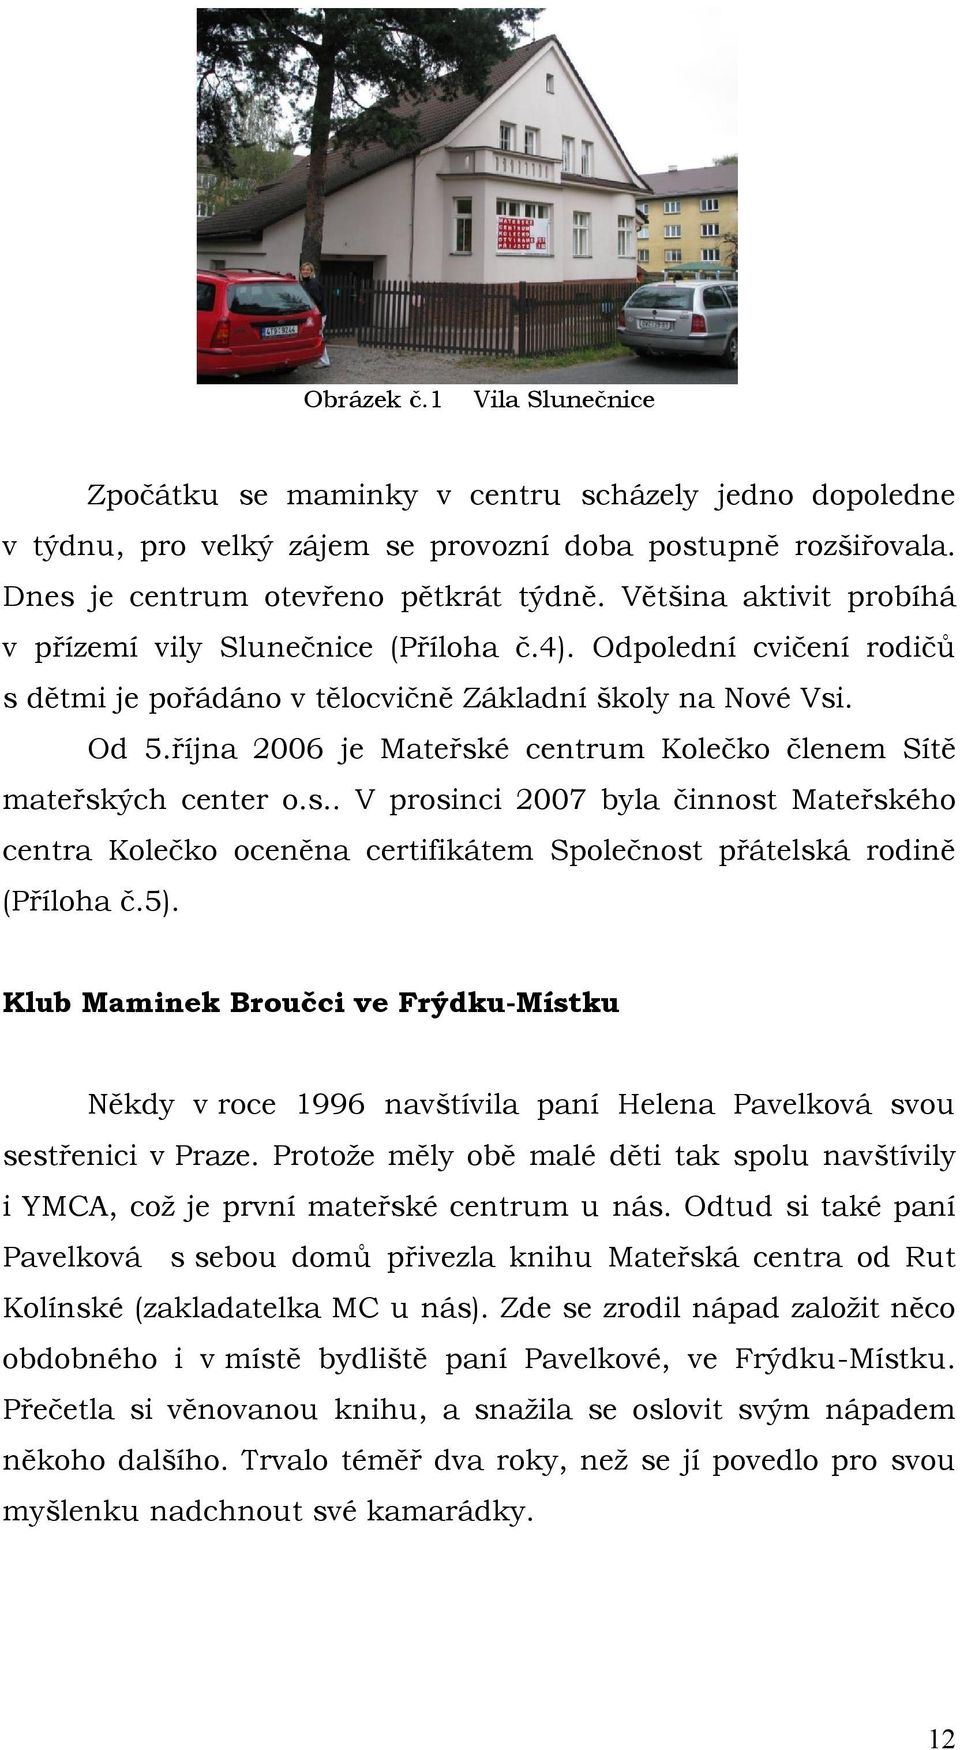 října 2006 je Mateřské centrum Kolečko členem Sítě mateřských center o.s.. V prosinci 2007 byla činnost Mateřského centra Kolečko oceněna certifikátem Společnost přátelská rodině (Příloha č.5).